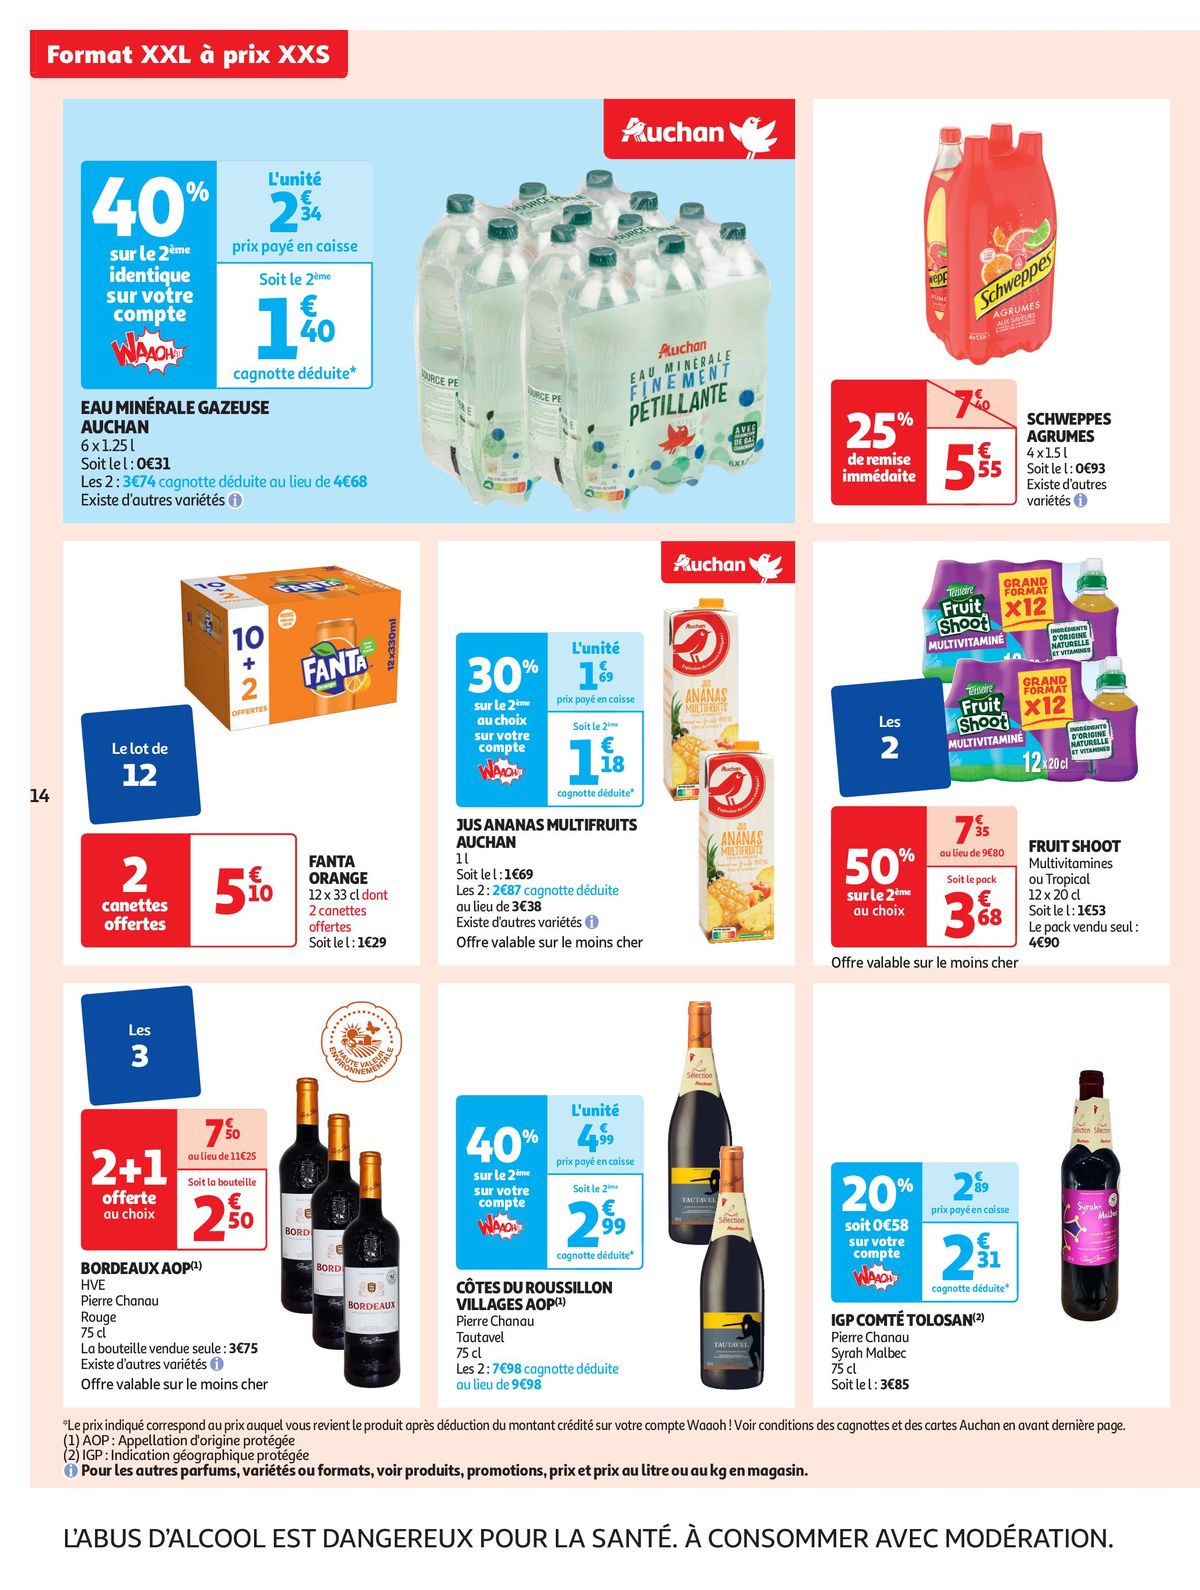 Catalogue Format XXL à prix XXS dans votre supermarché, page 00014